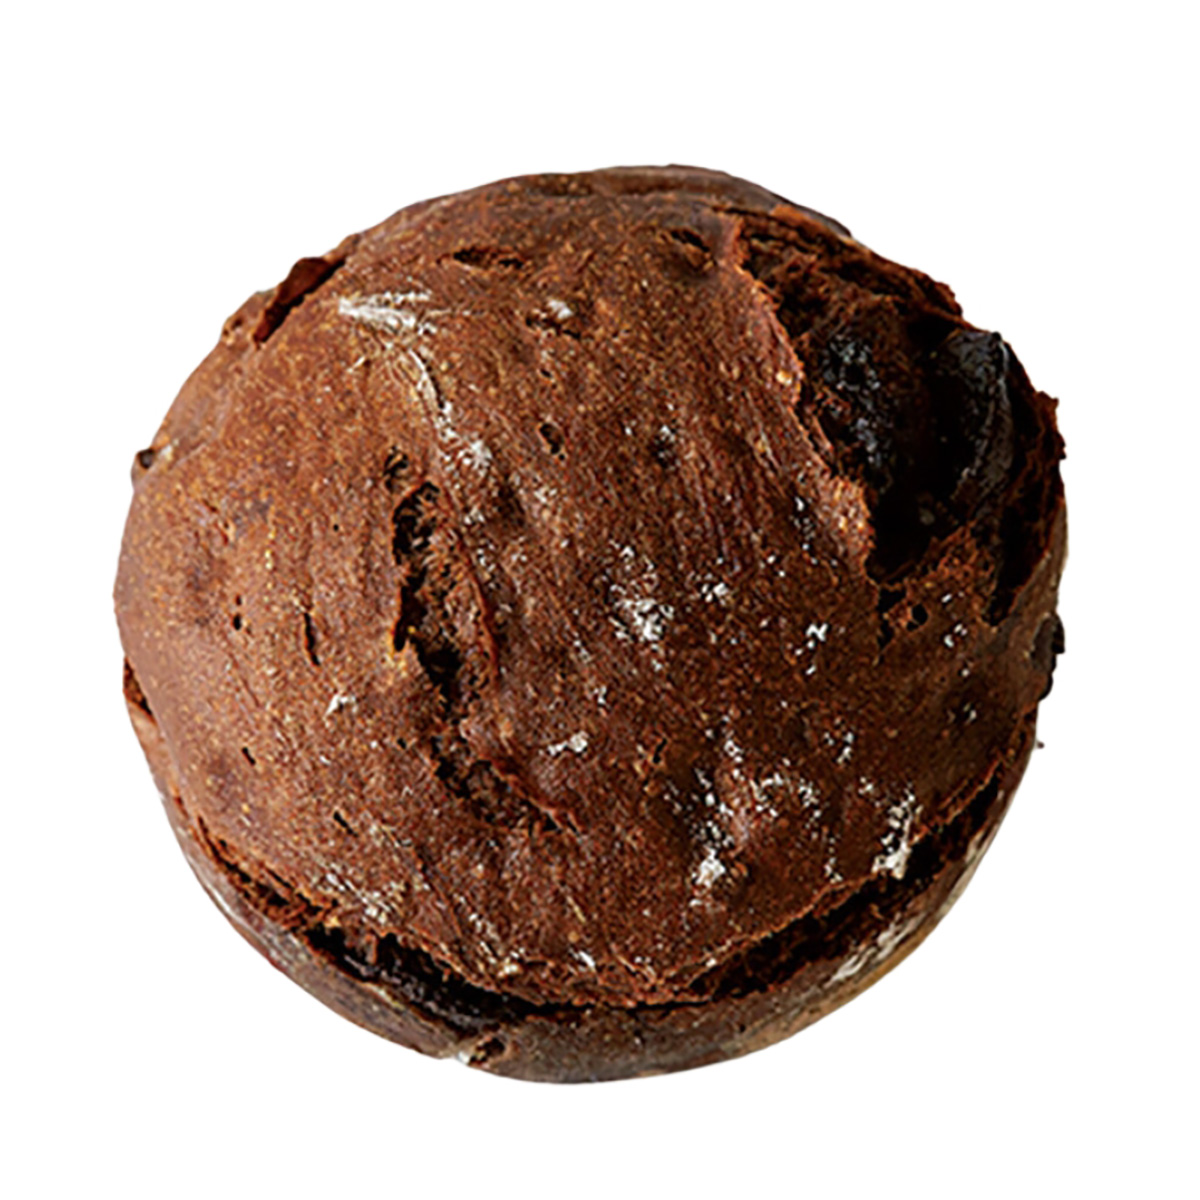 大人のチョコパンと称したいカカオ240円は温めても美味。カカオニブがアクセント。